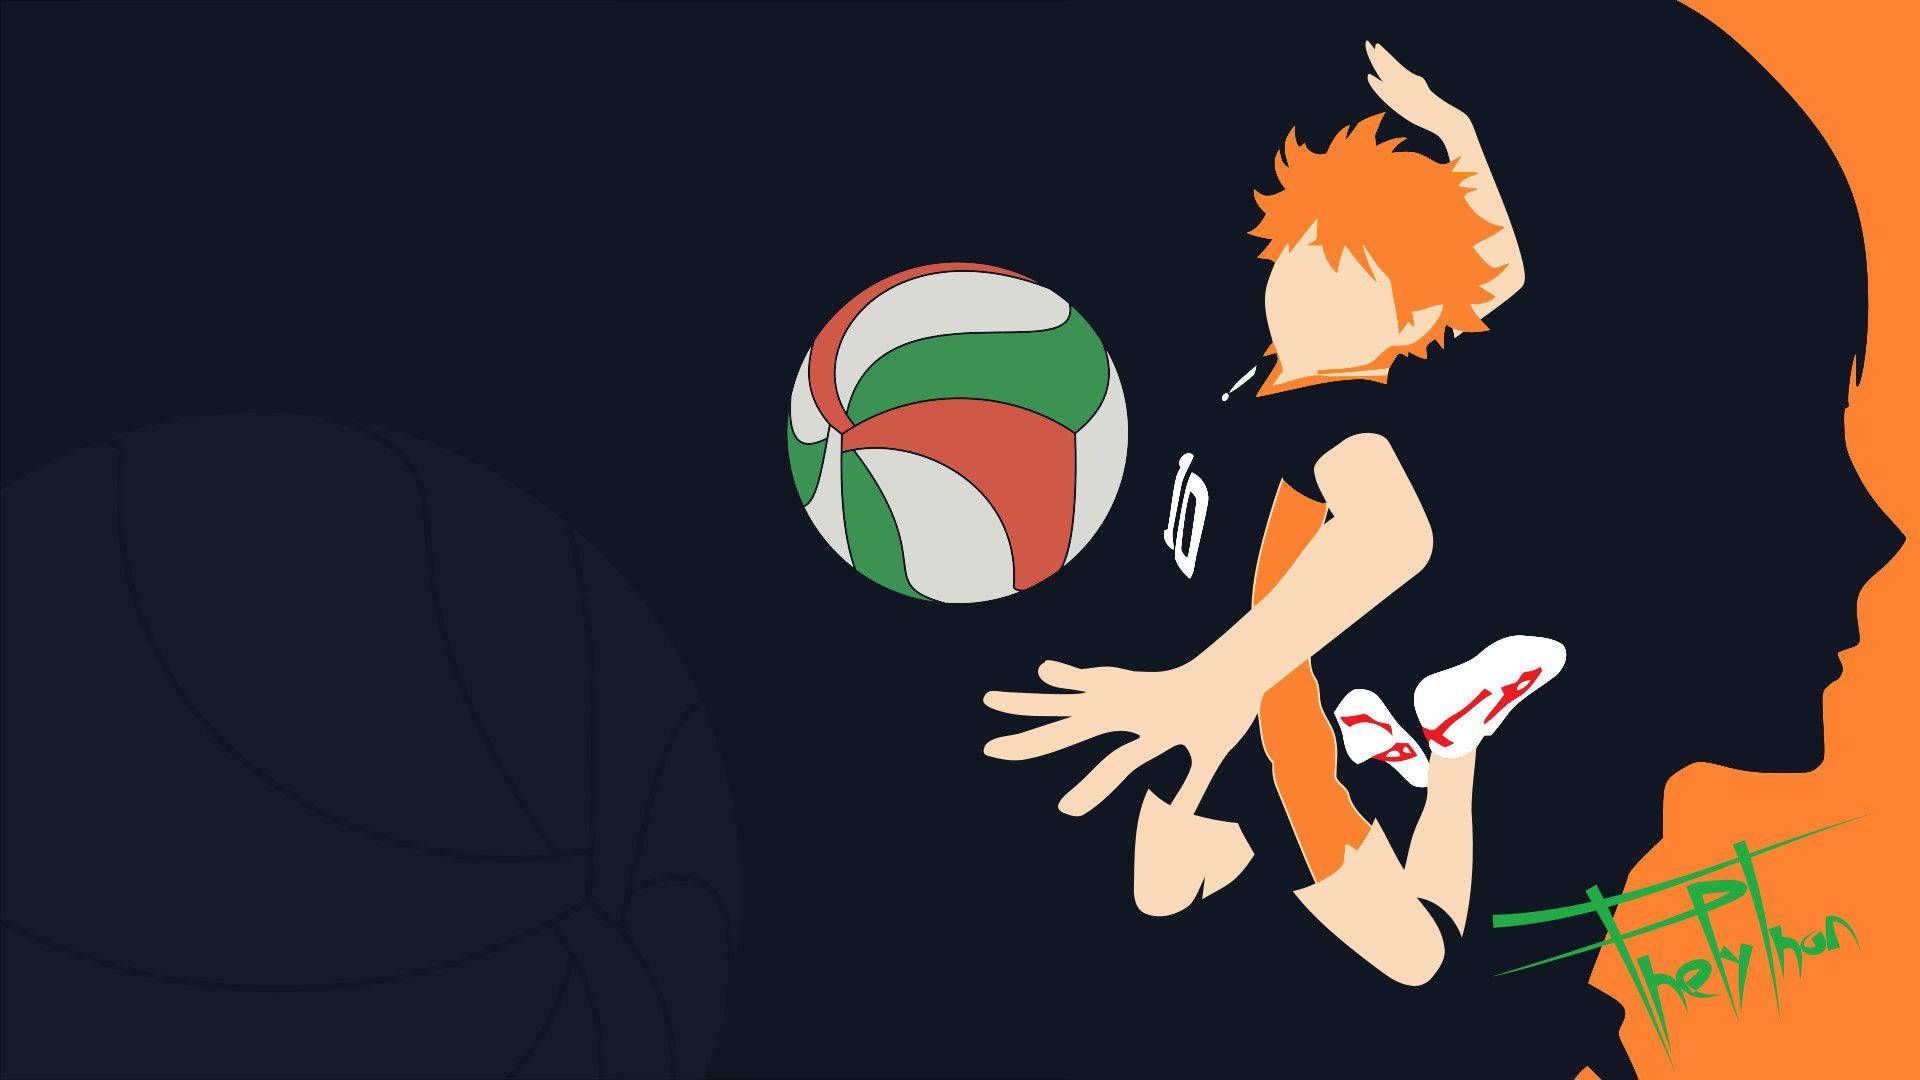 Hinatashouyou, Den Passionerade Volleybollspelaren Som Är Fast Besluten Att Nå Sina Drömmar. Wallpaper